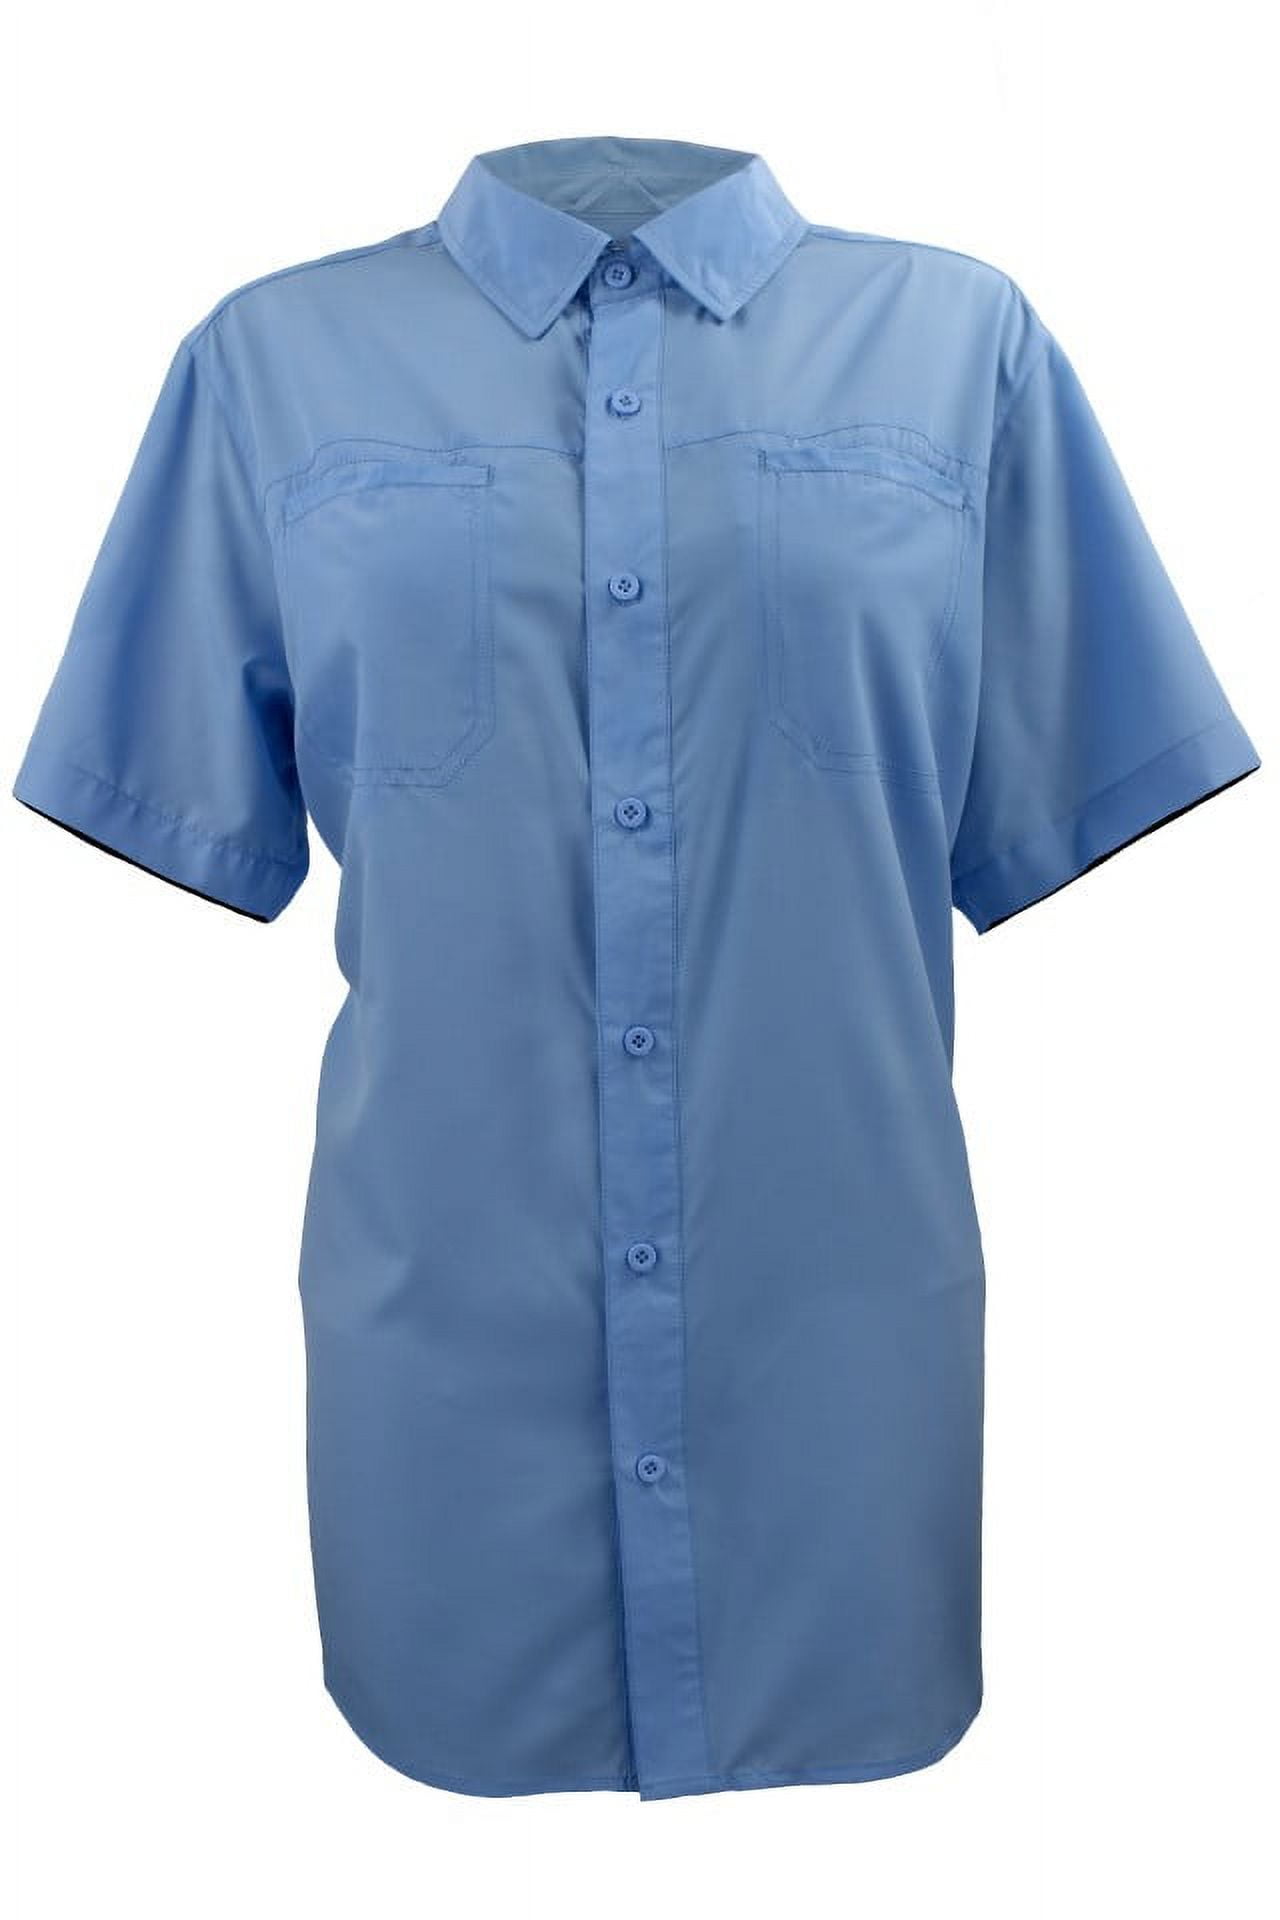 Fintech Women's Short Sleeve Fishing Shirt - XL, Blue